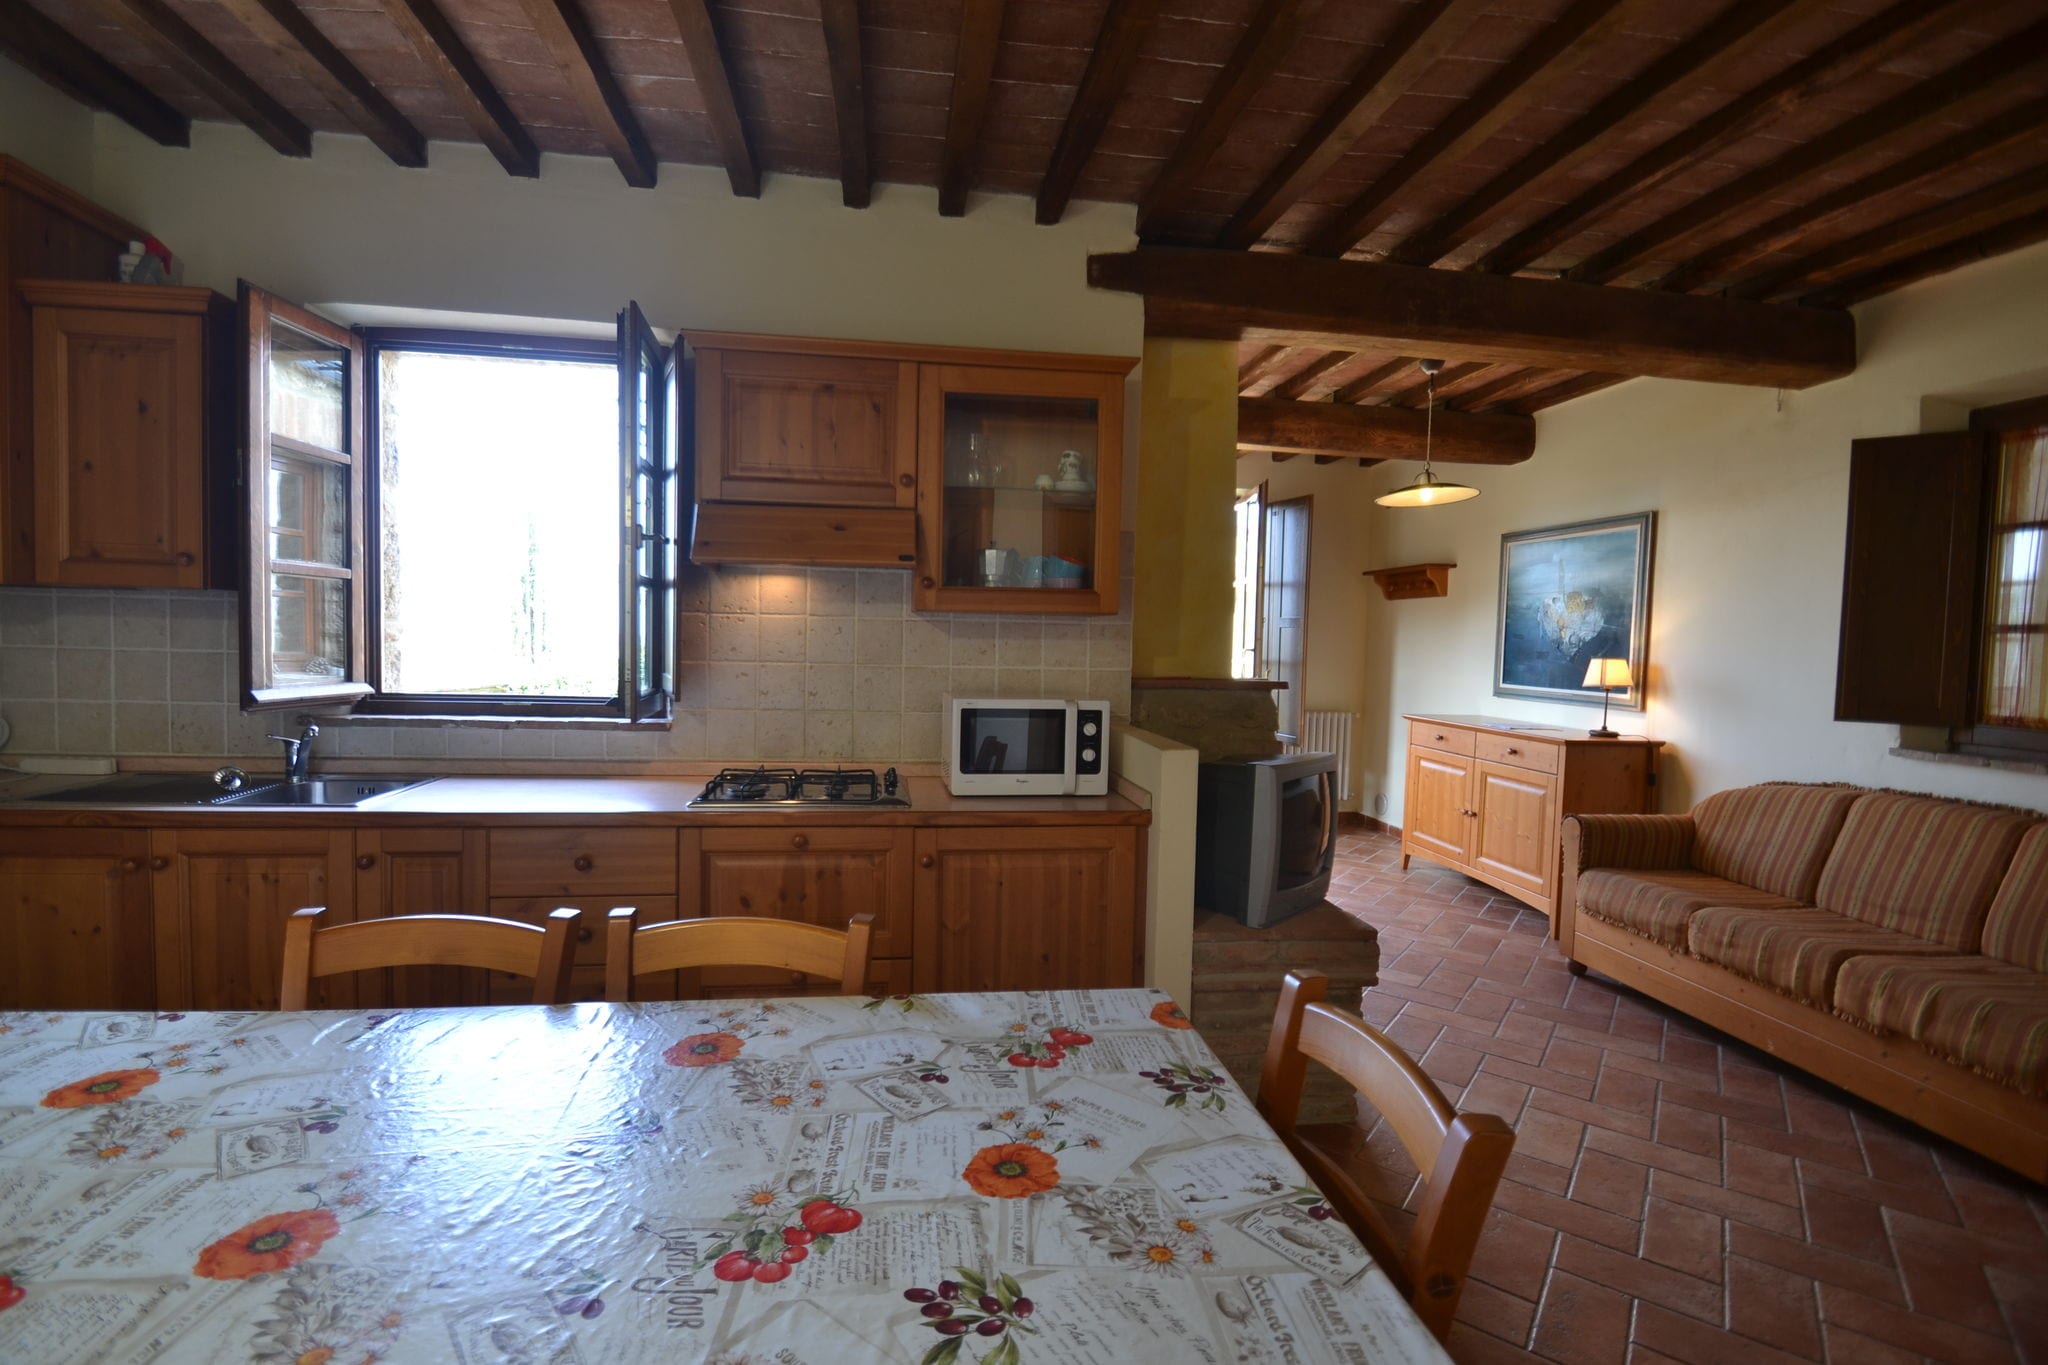 Appartement in Middeleeuws dorp Asciano met 2 zwembaden in de heuvels van Siena